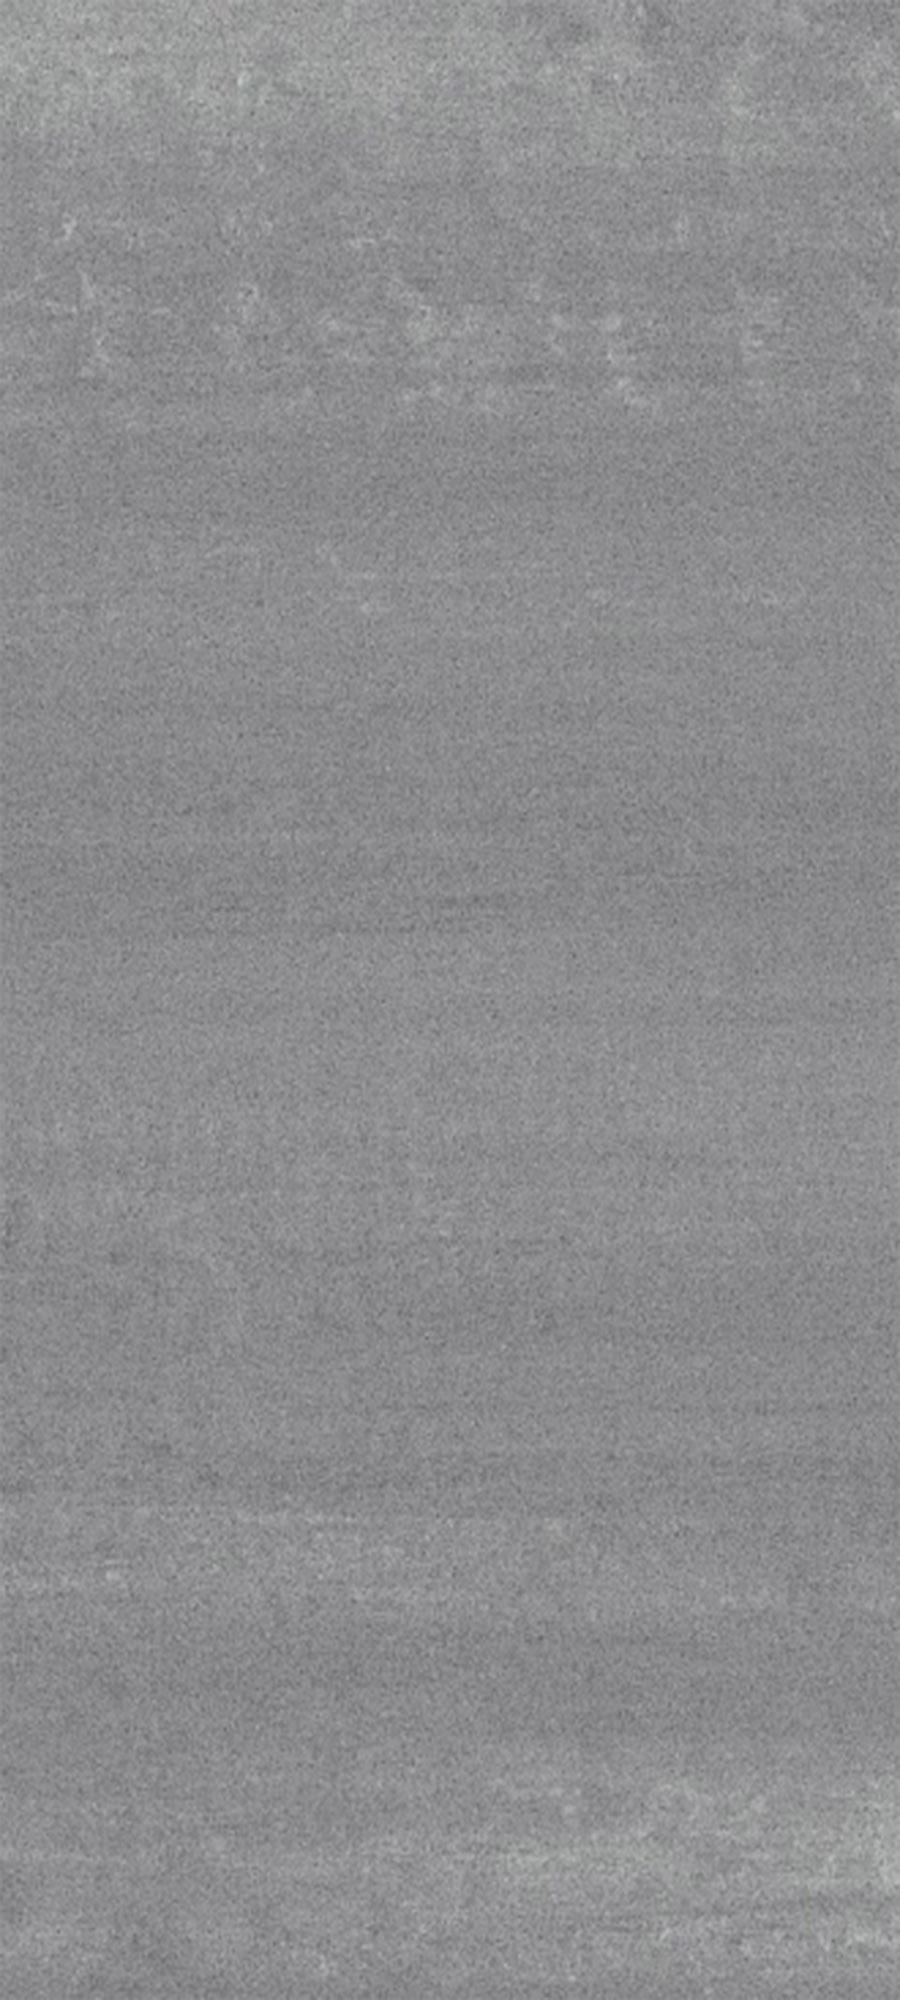 90296564 Керамический гранит Про Дабл серый тёмный обрезной 30х60см, цена за упаковку STLM-0173230 KERAMA MARAZZI